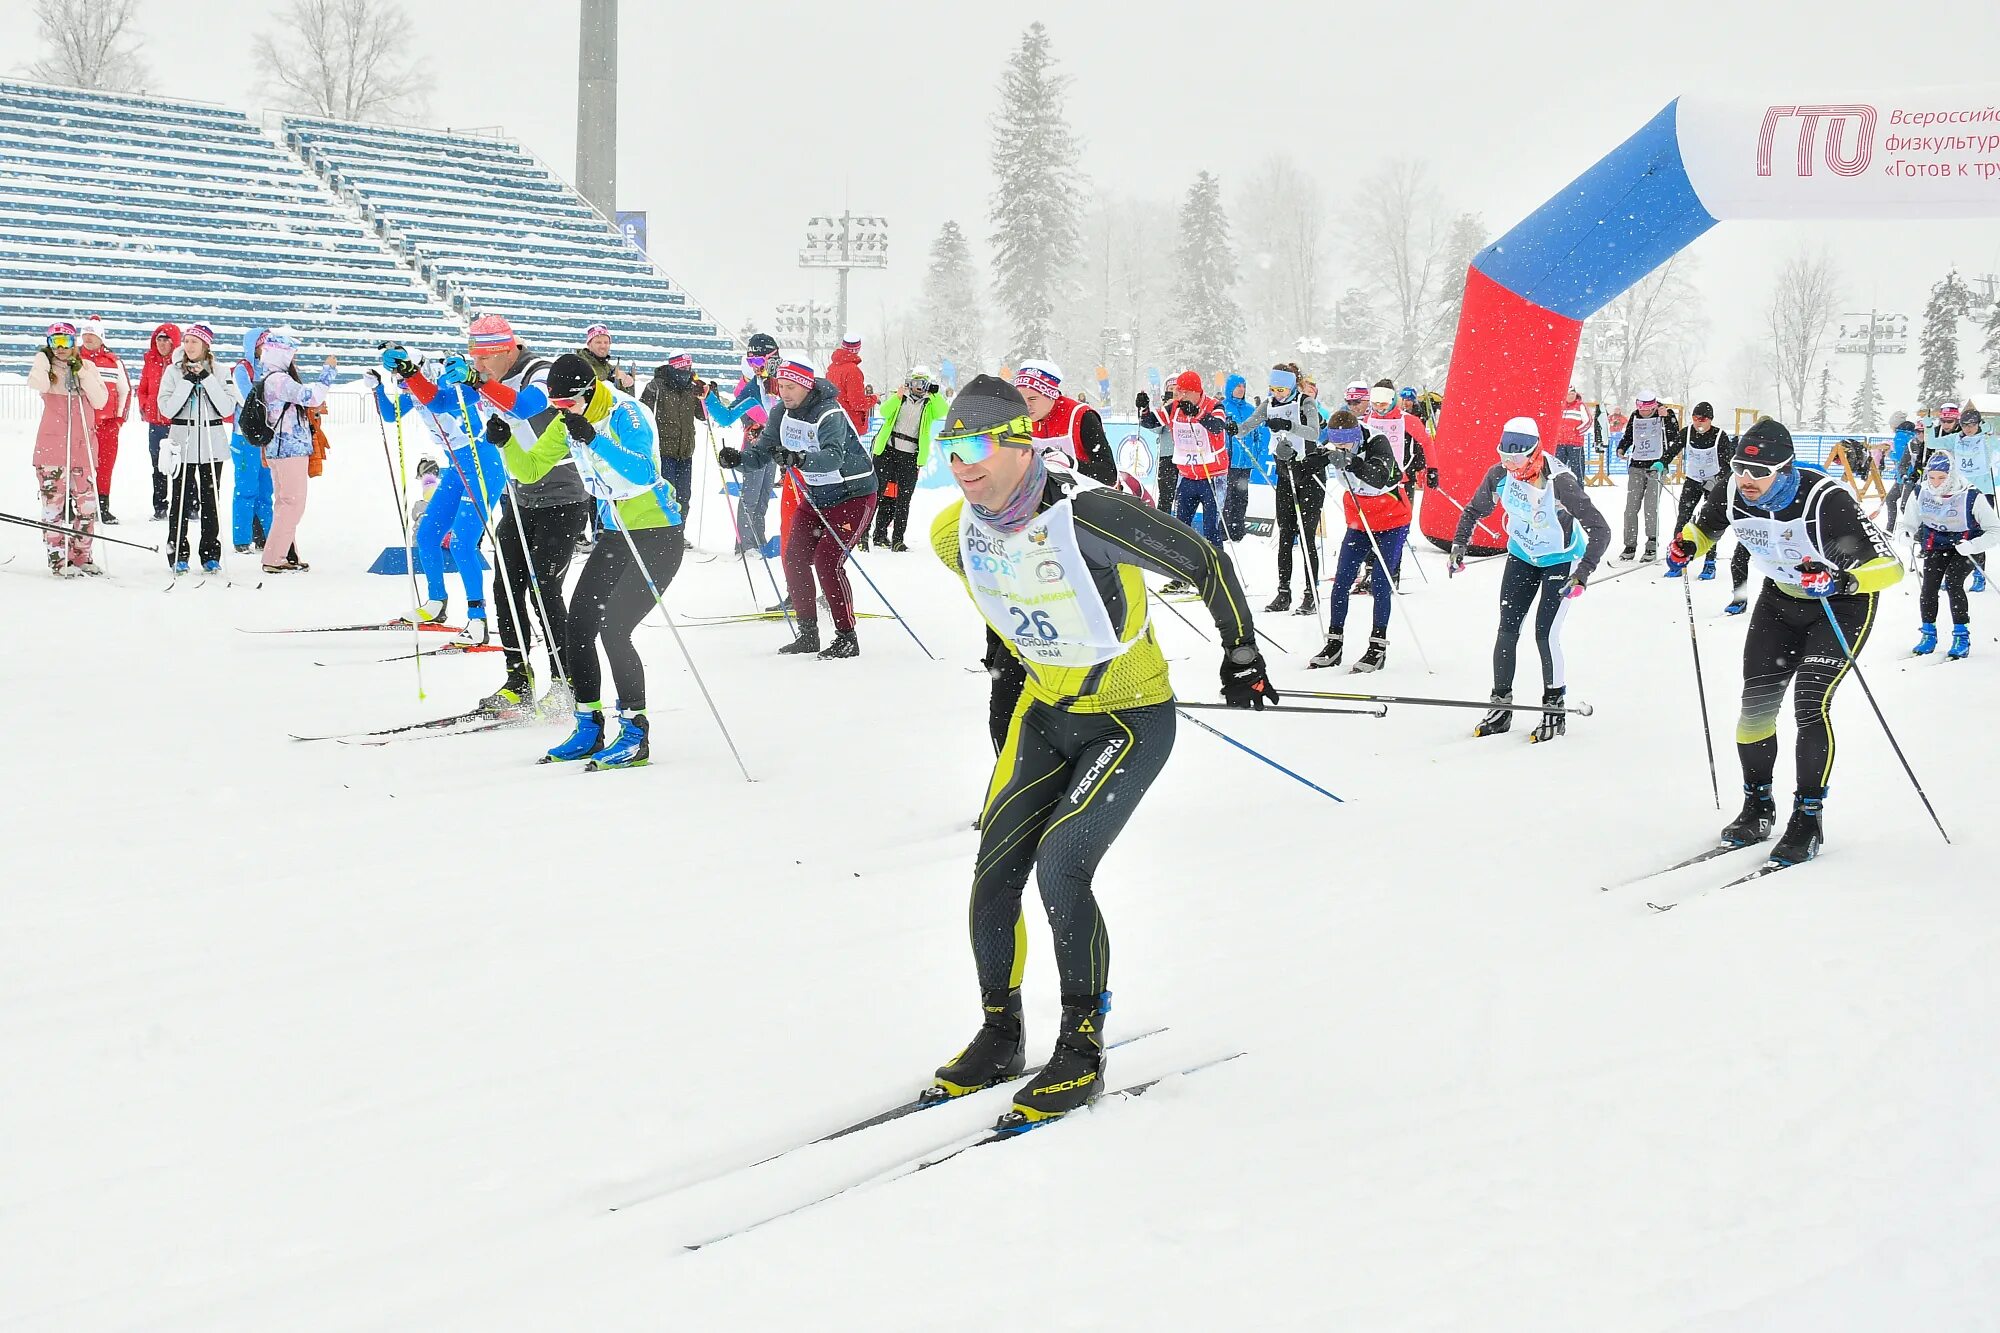 Лыжно-биатлонный комплекс Саранск. Лыжи для биатлона. Лыжная гонка. Массовый завал на спартакиаде в сочи